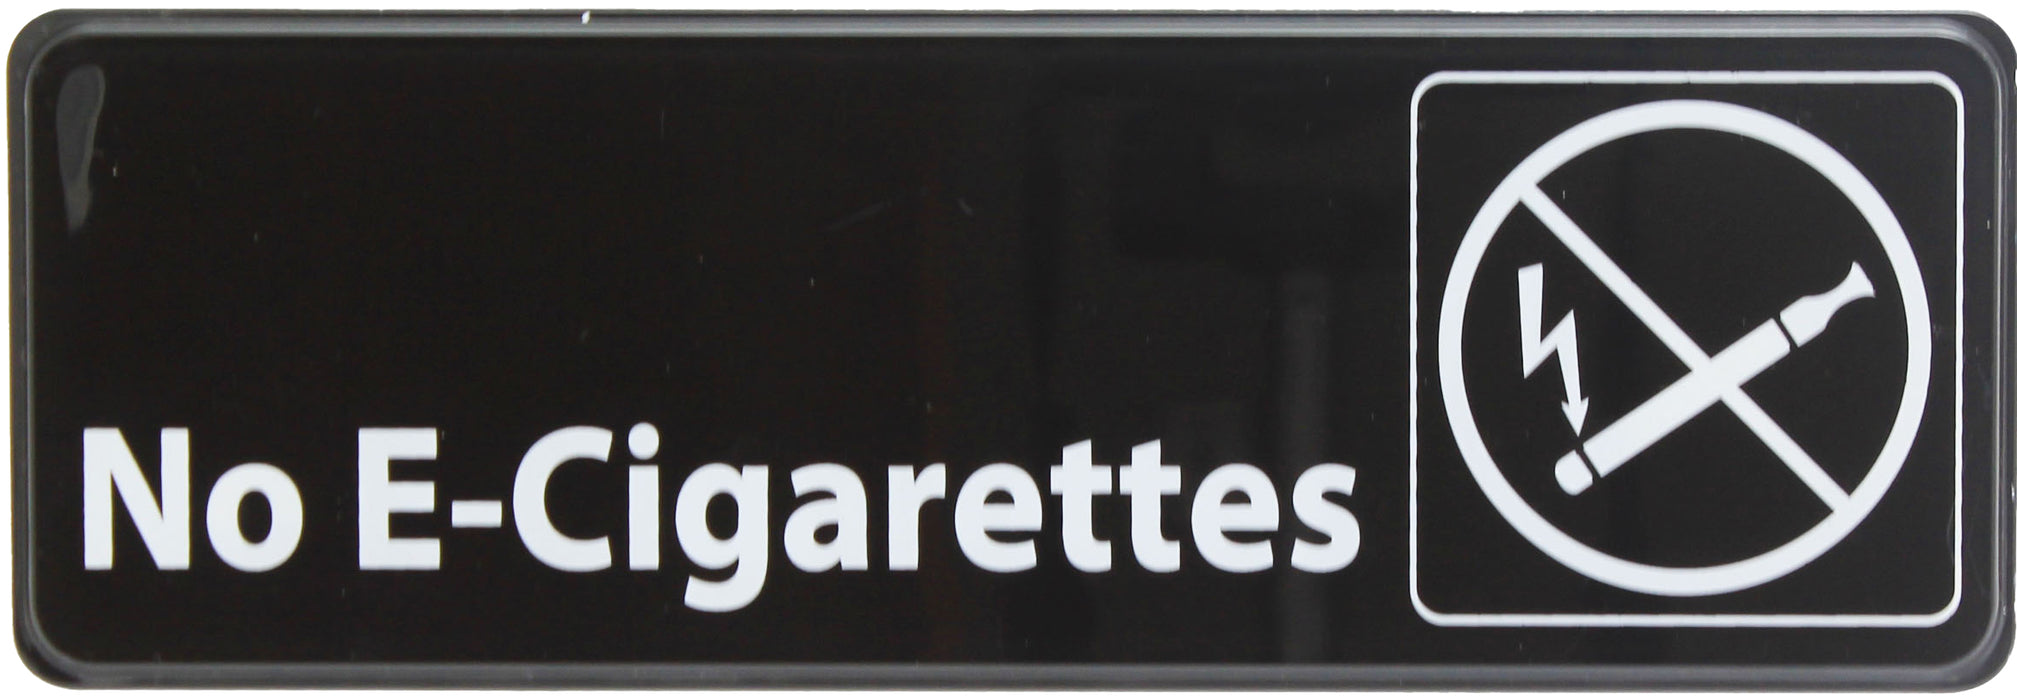 Sign 9" x 3" x 1/8", No E-Cigarettes QTY-12-cityfoodequipment.com